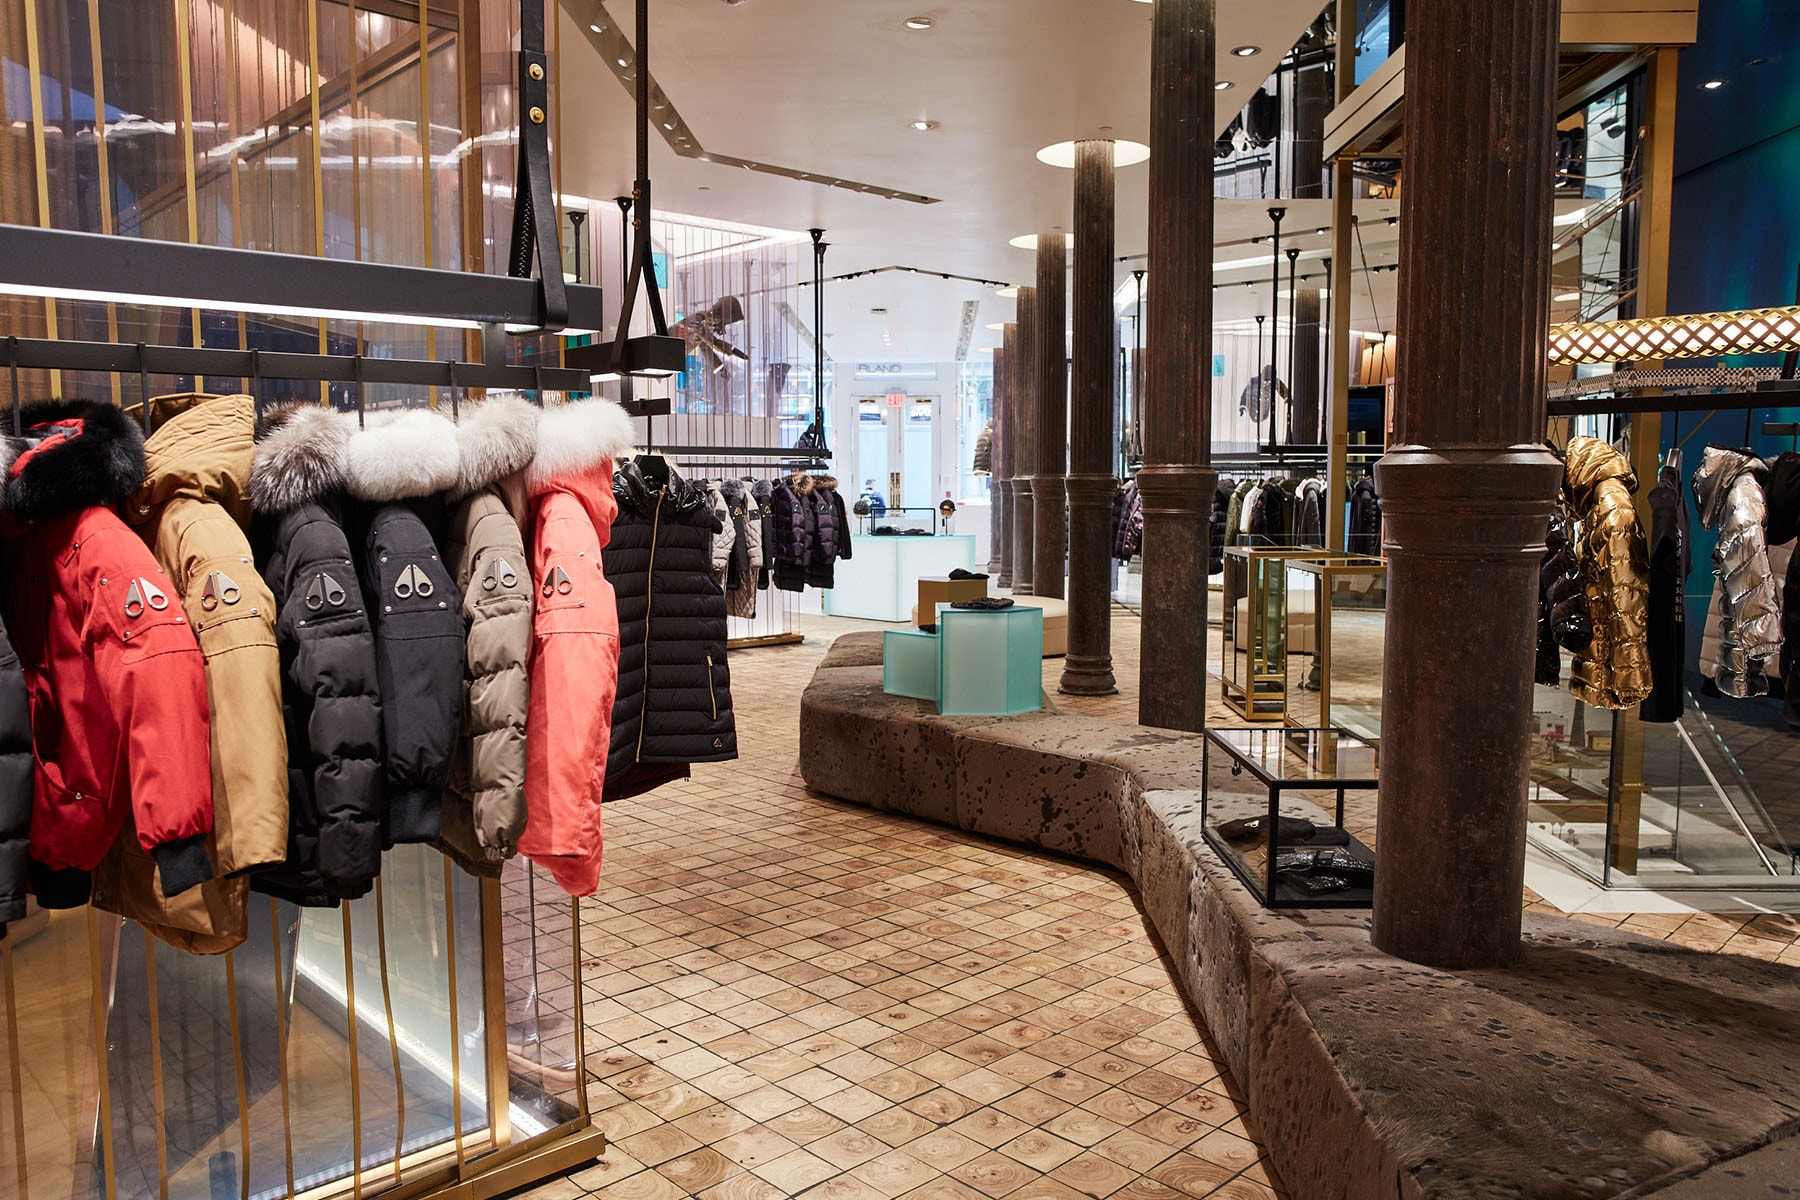 ムースナックルズ カナダ発のプレミアムアウターブランド Moose Knuckles がニューヨークに新旗艦店をオープン